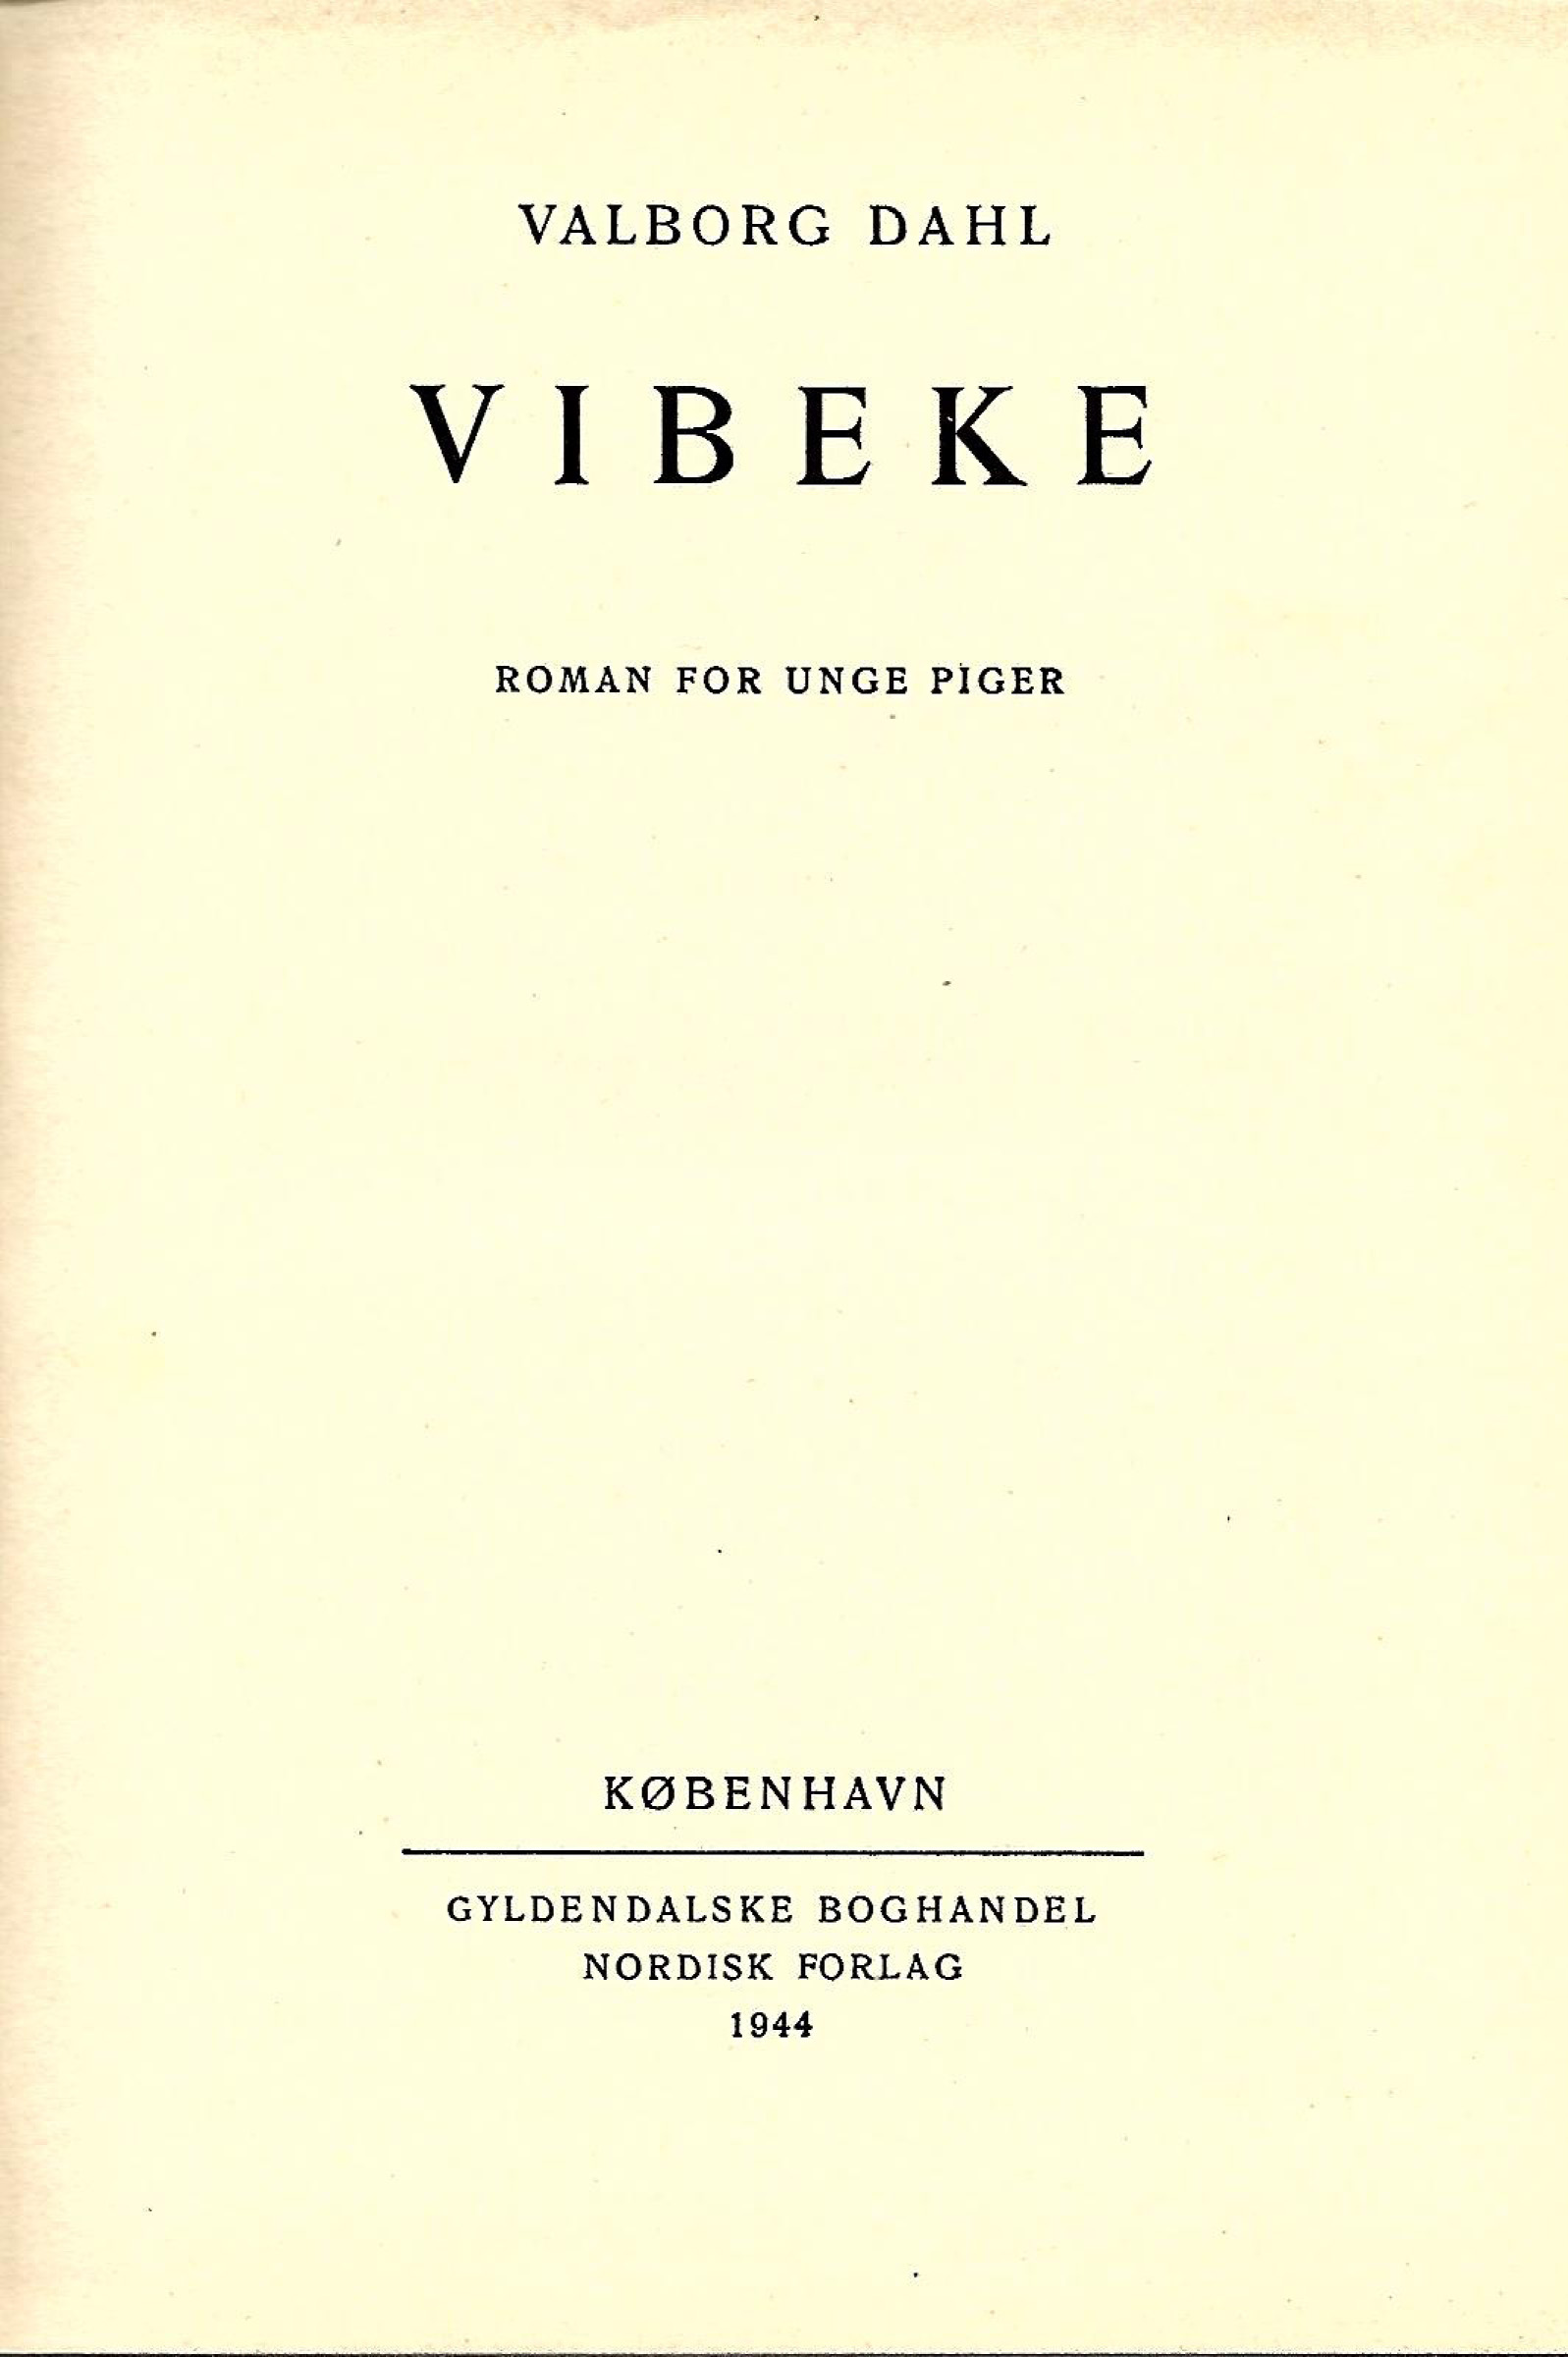 Vibeke - Valborg Dahl 1944-1